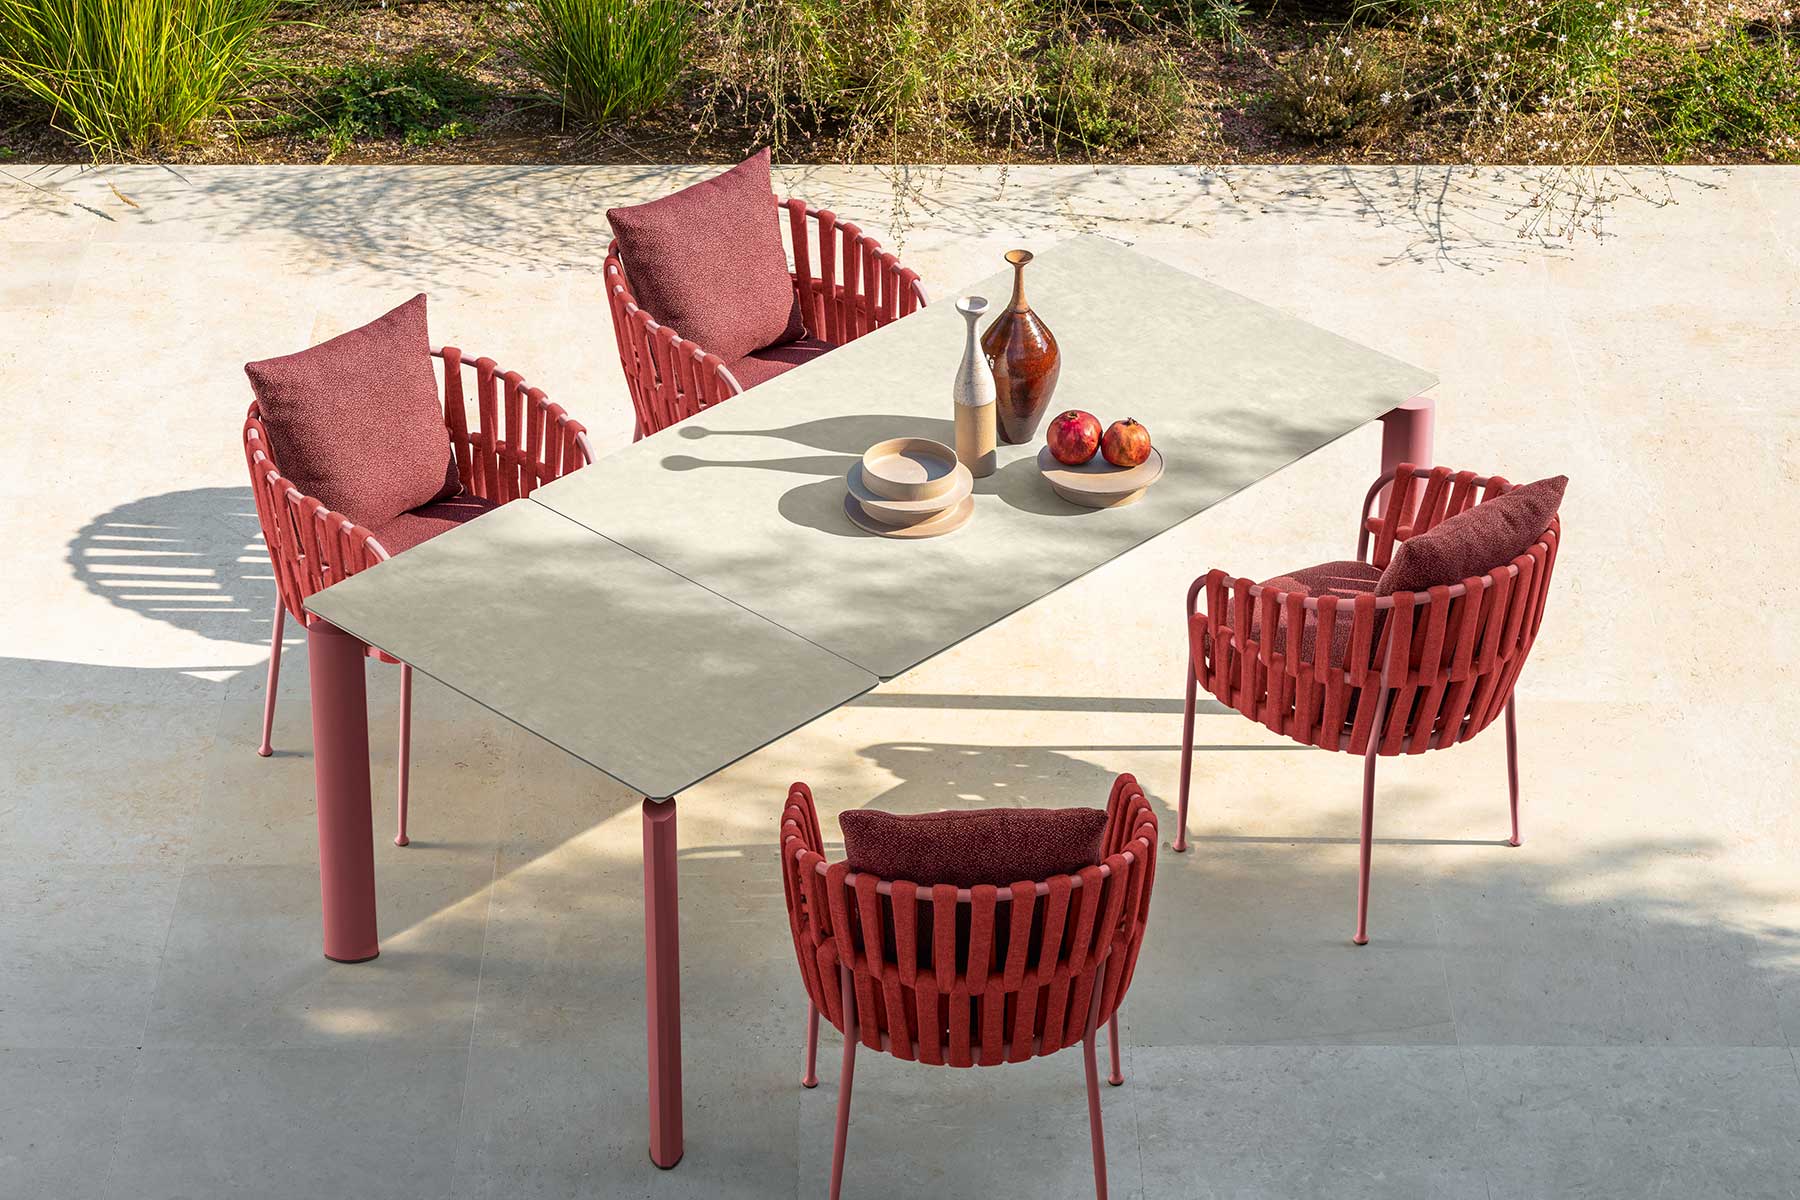 Vente en ligne de meubles de jardin de haute qualité. Offrez-vous la chaise de jardin rouge Fabric en livraison gratuite pour compléter votre table de repas